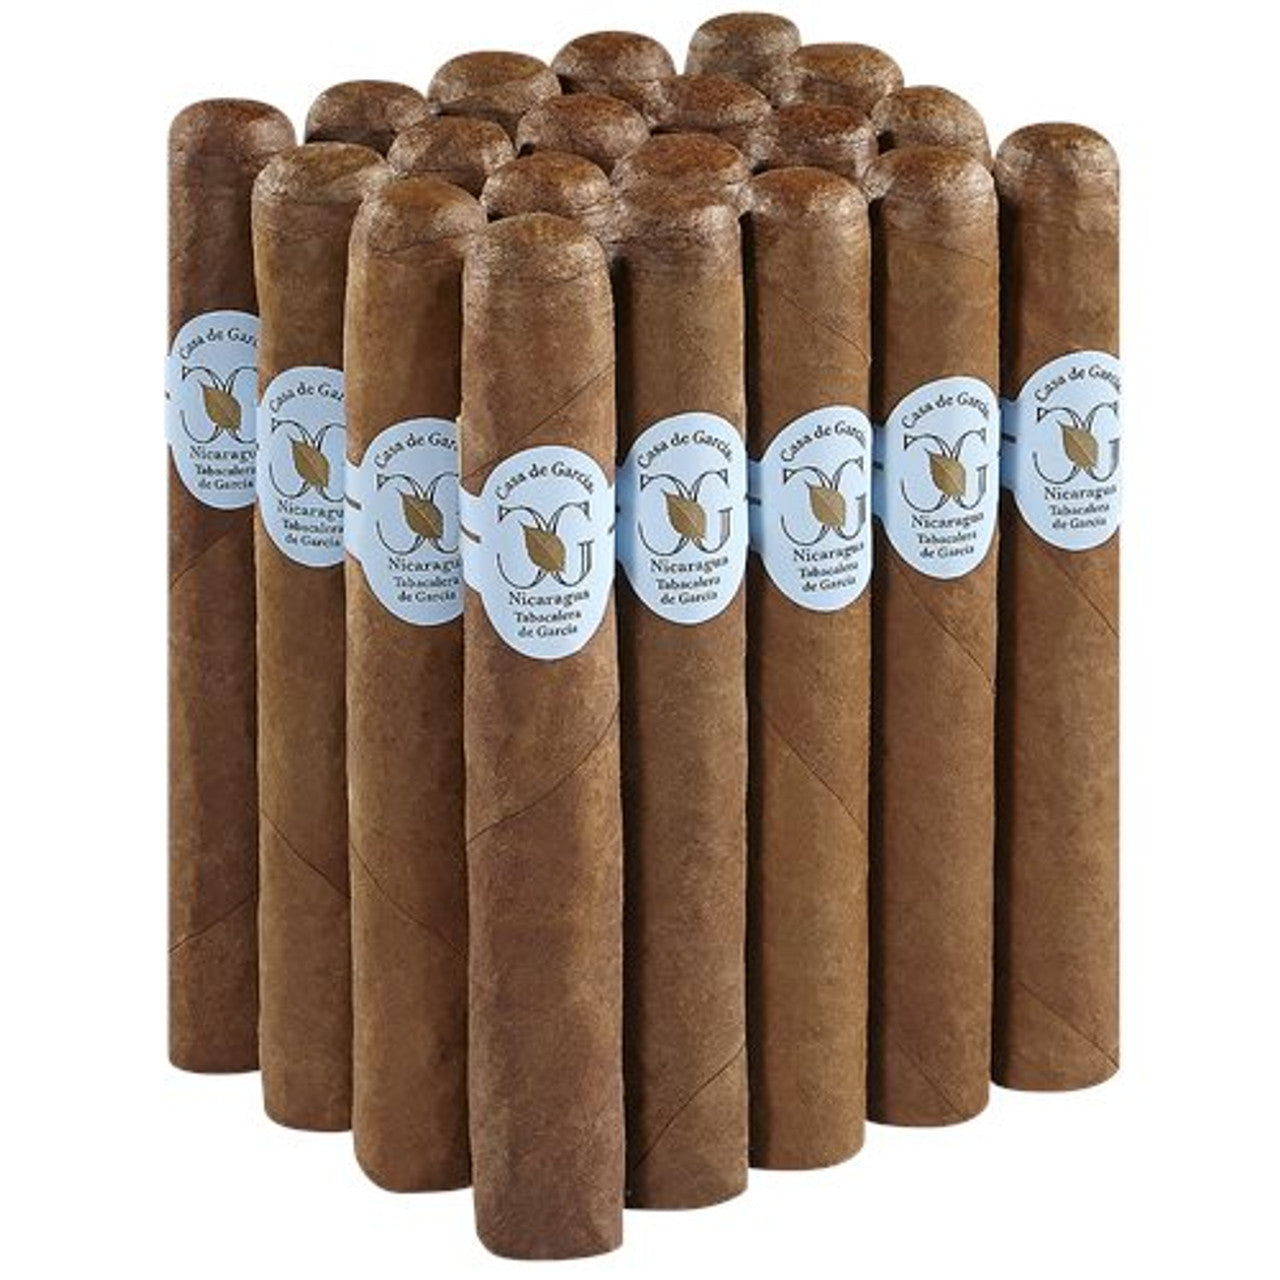 Casa de Garcia Nicaragua Robusto Cigars